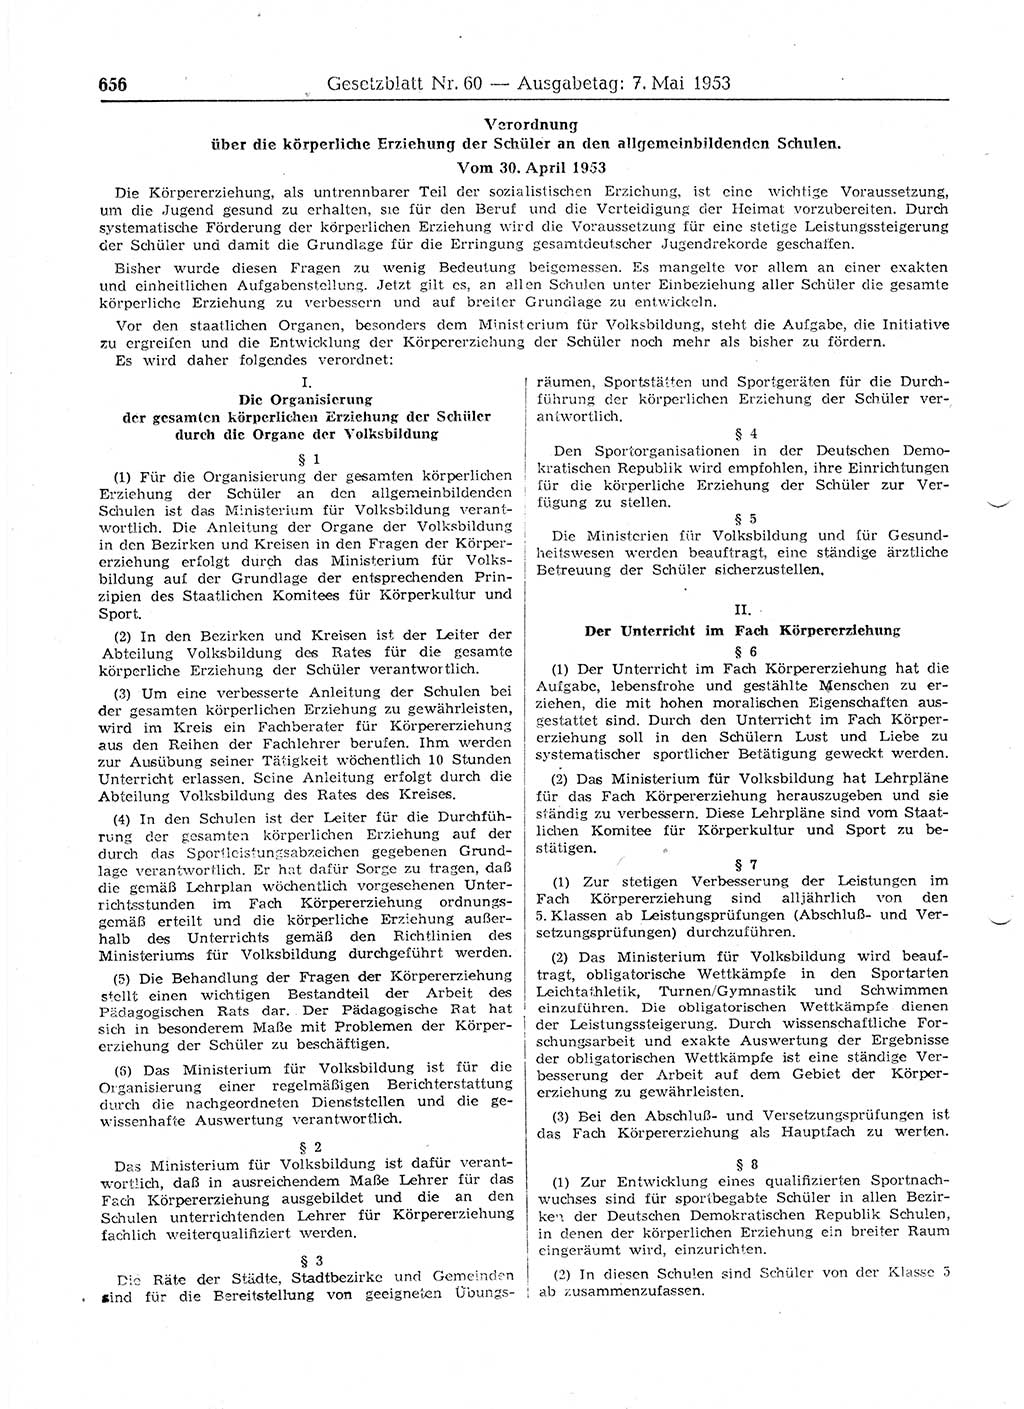 Gesetzblatt (GBl.) der Deutschen Demokratischen Republik (DDR) 1953, Seite 656 (GBl. DDR 1953, S. 656)